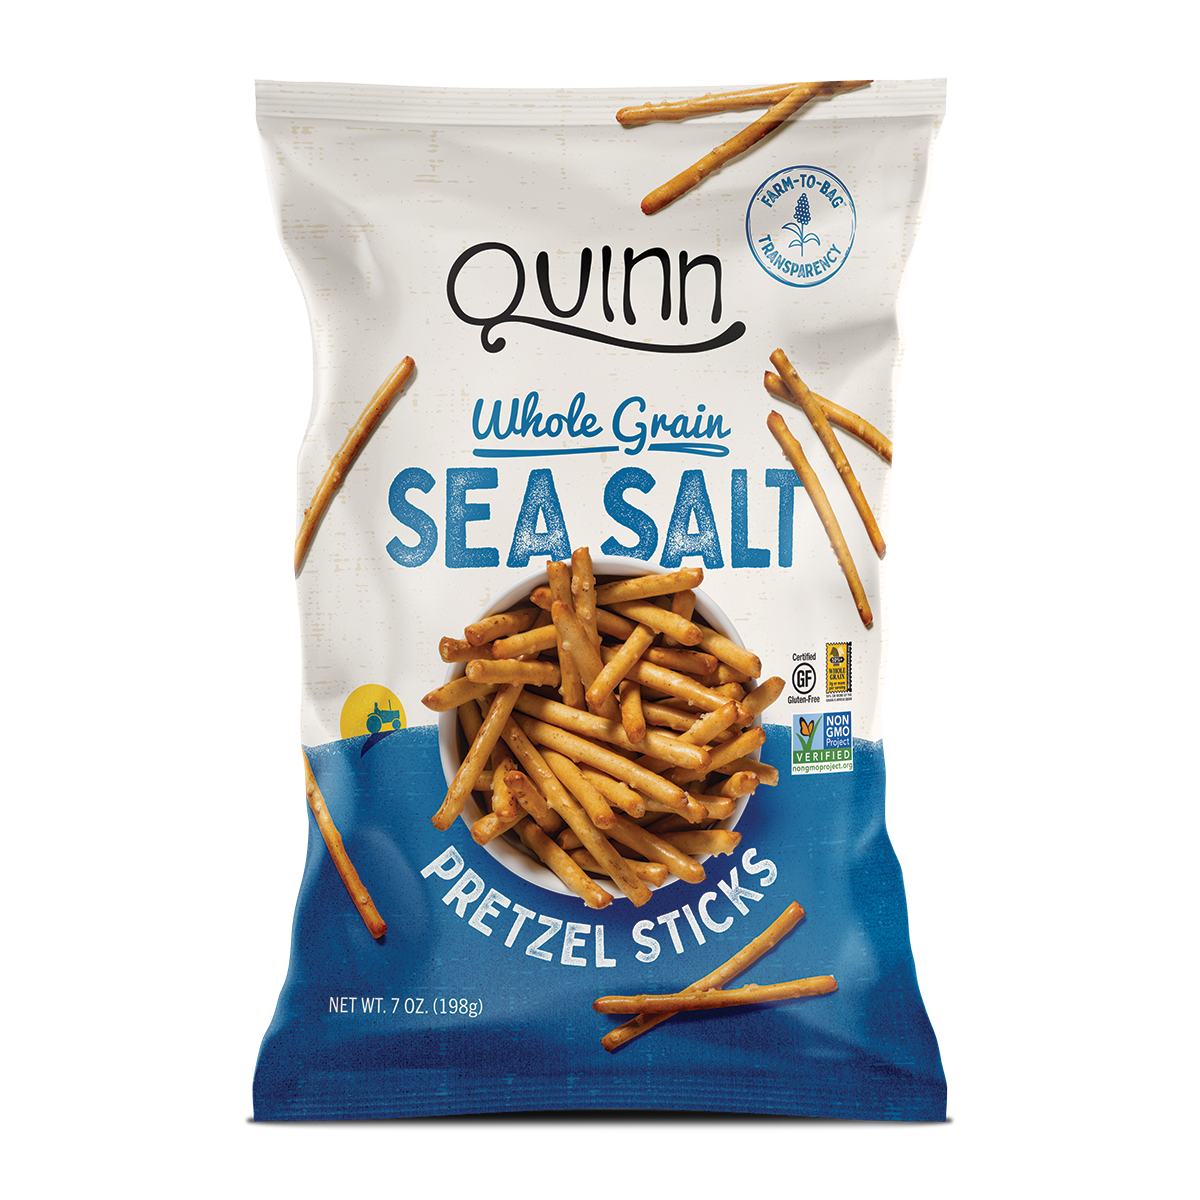 Quinn Gluten Free Sea Salt Pretzels Sticks